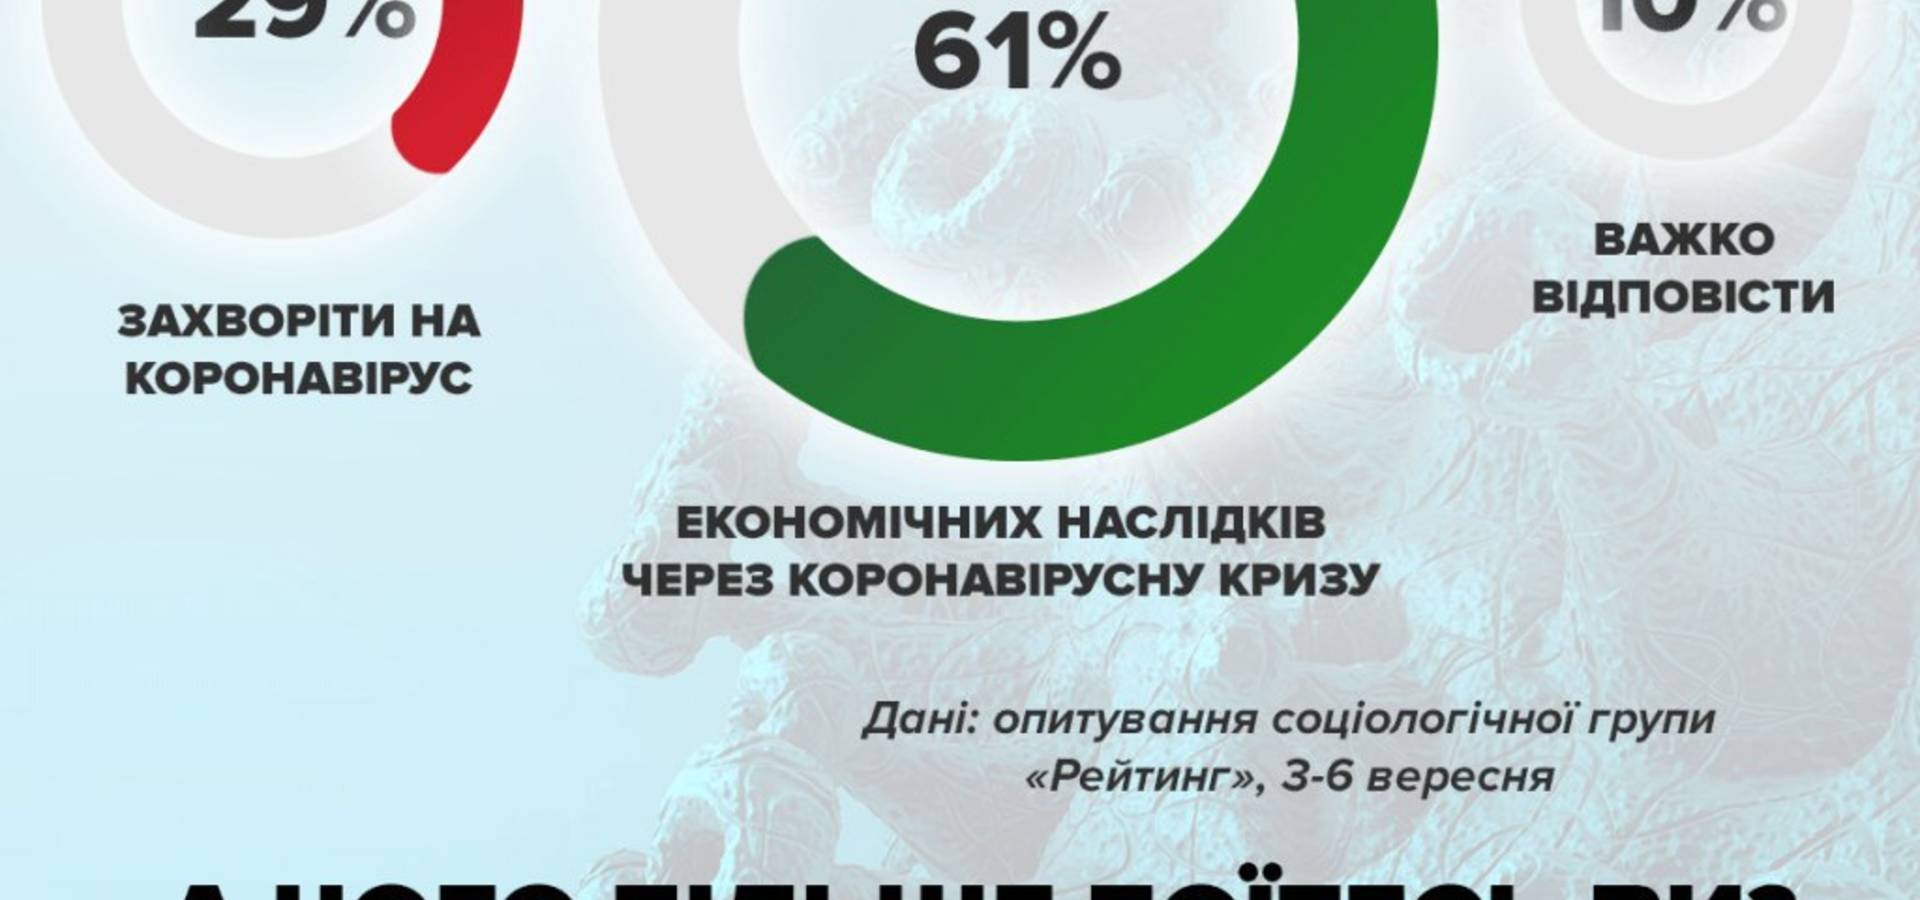 Понад  60 відсотків українців більше бояться економічної кризи, ніж коронавірусу